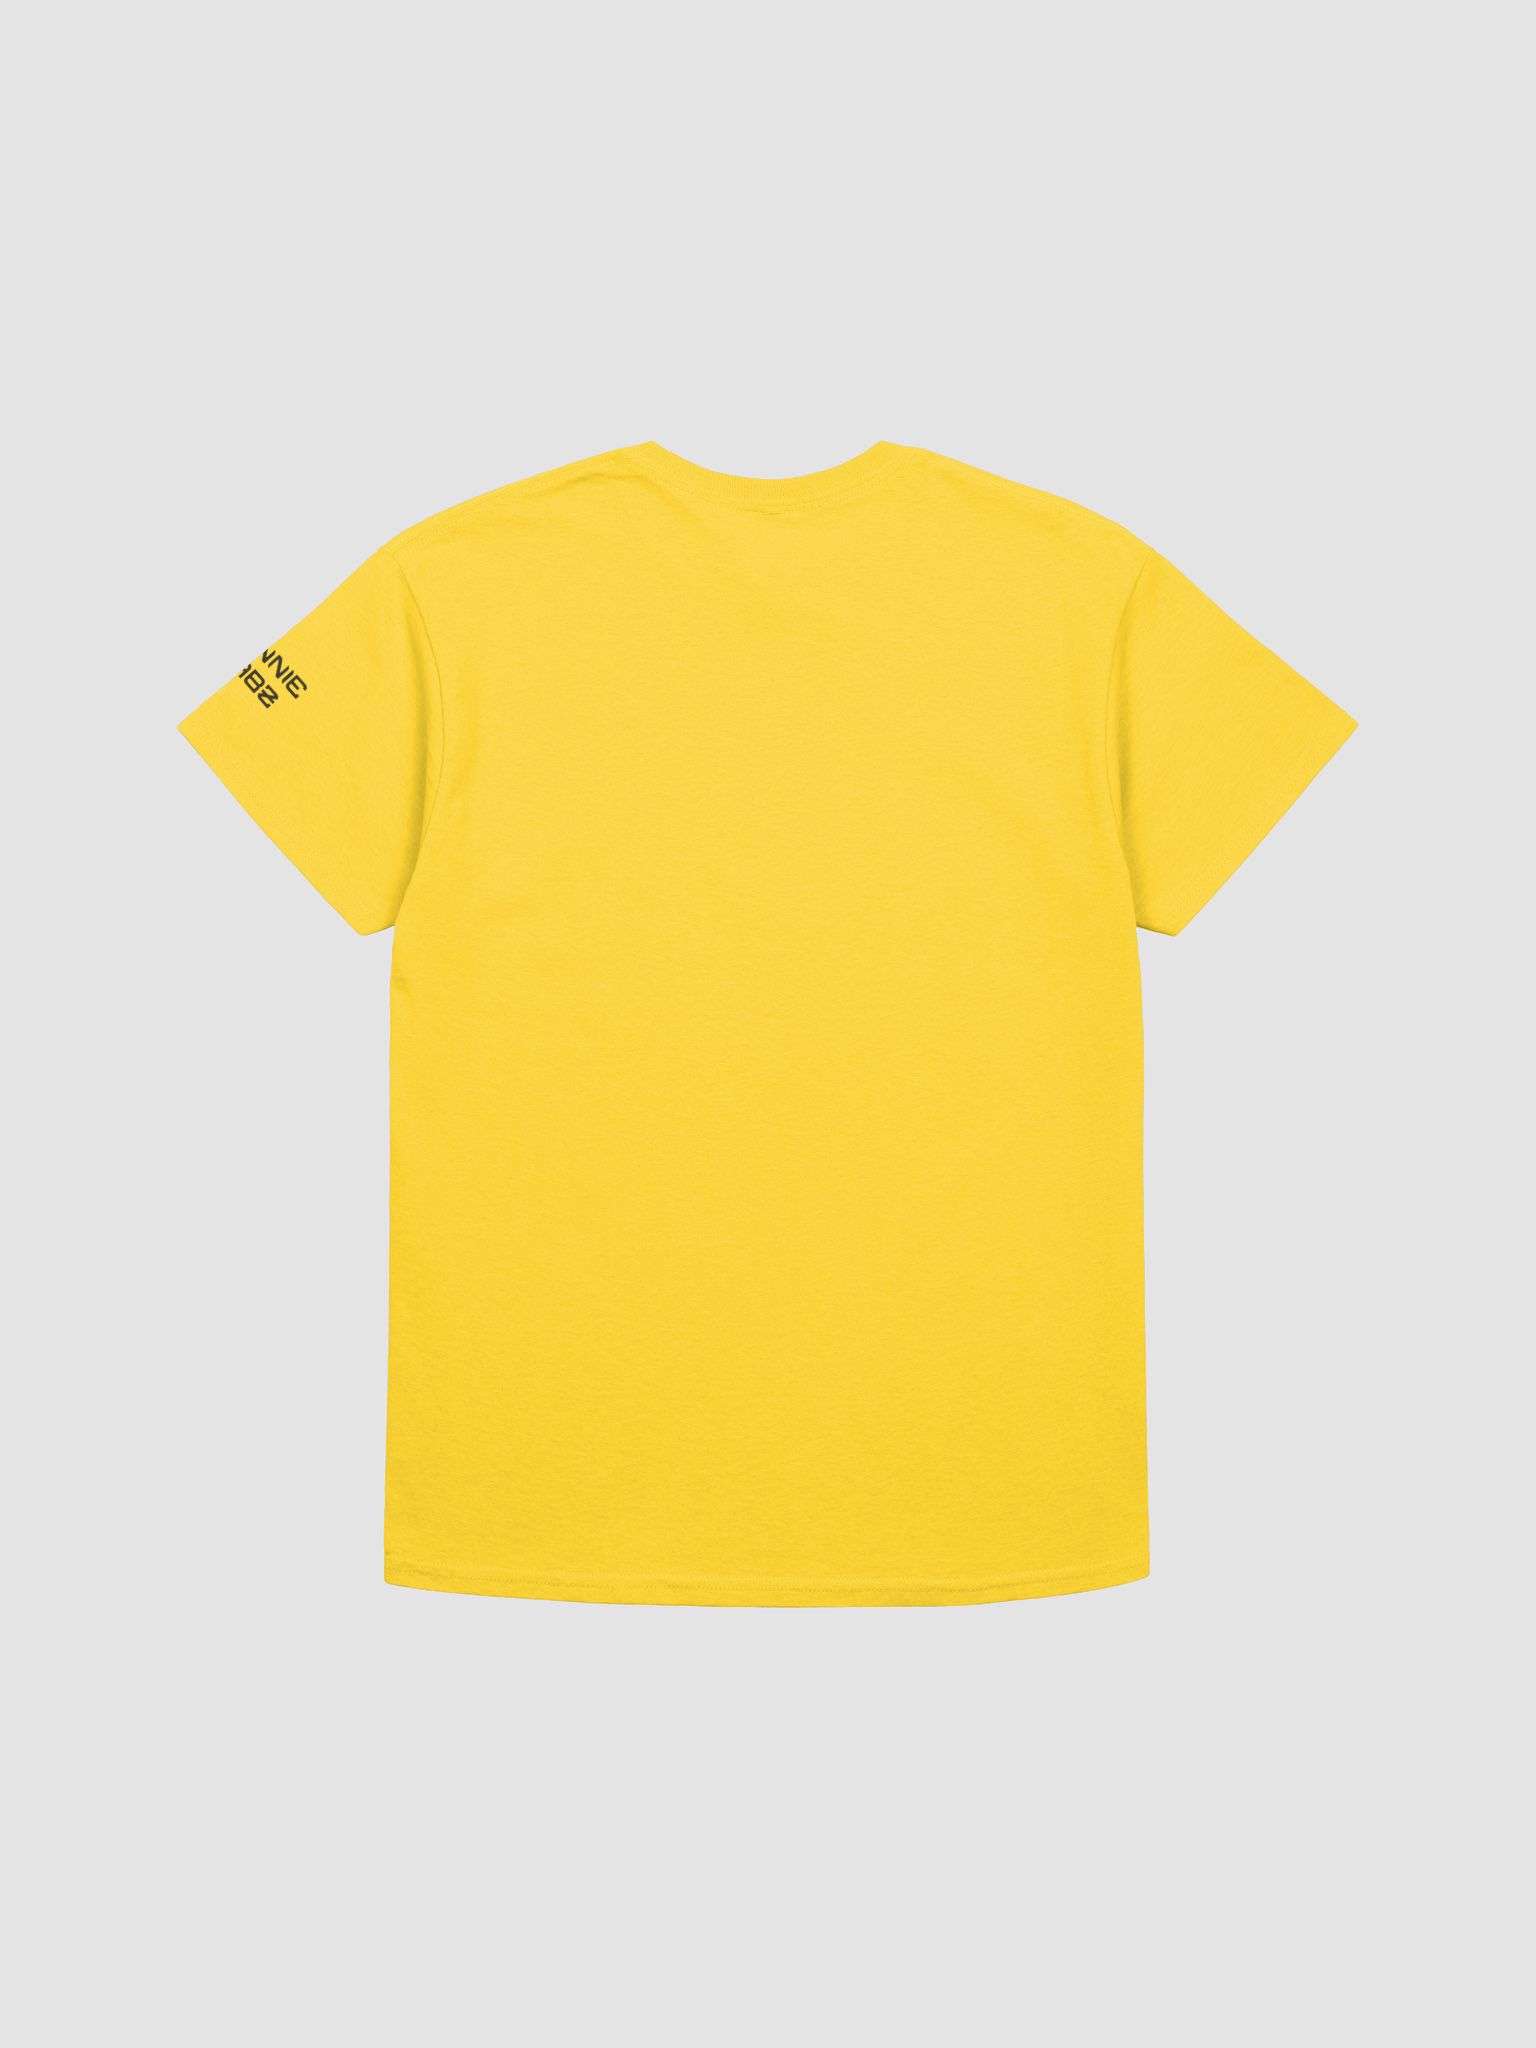 WinnieTabz T-Shirt Merch | WinnieTabz